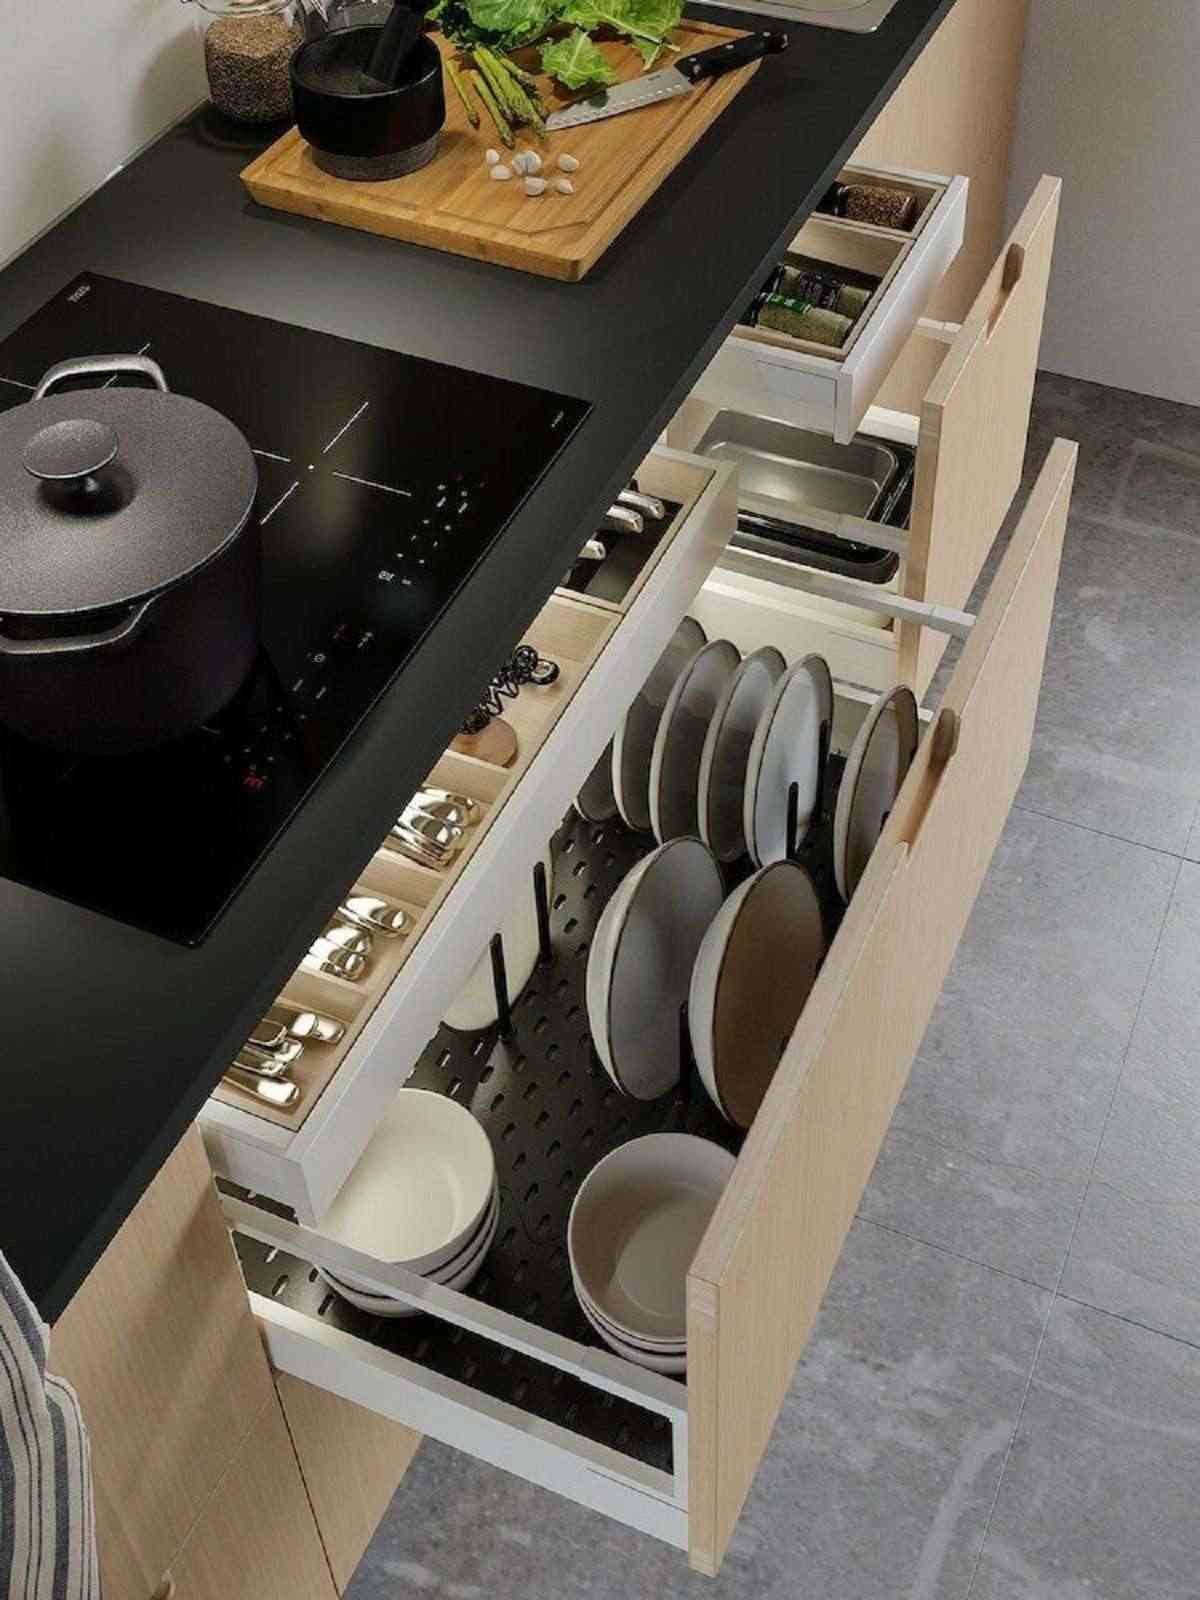 Descubre las cocinas de Ikea 2022 2